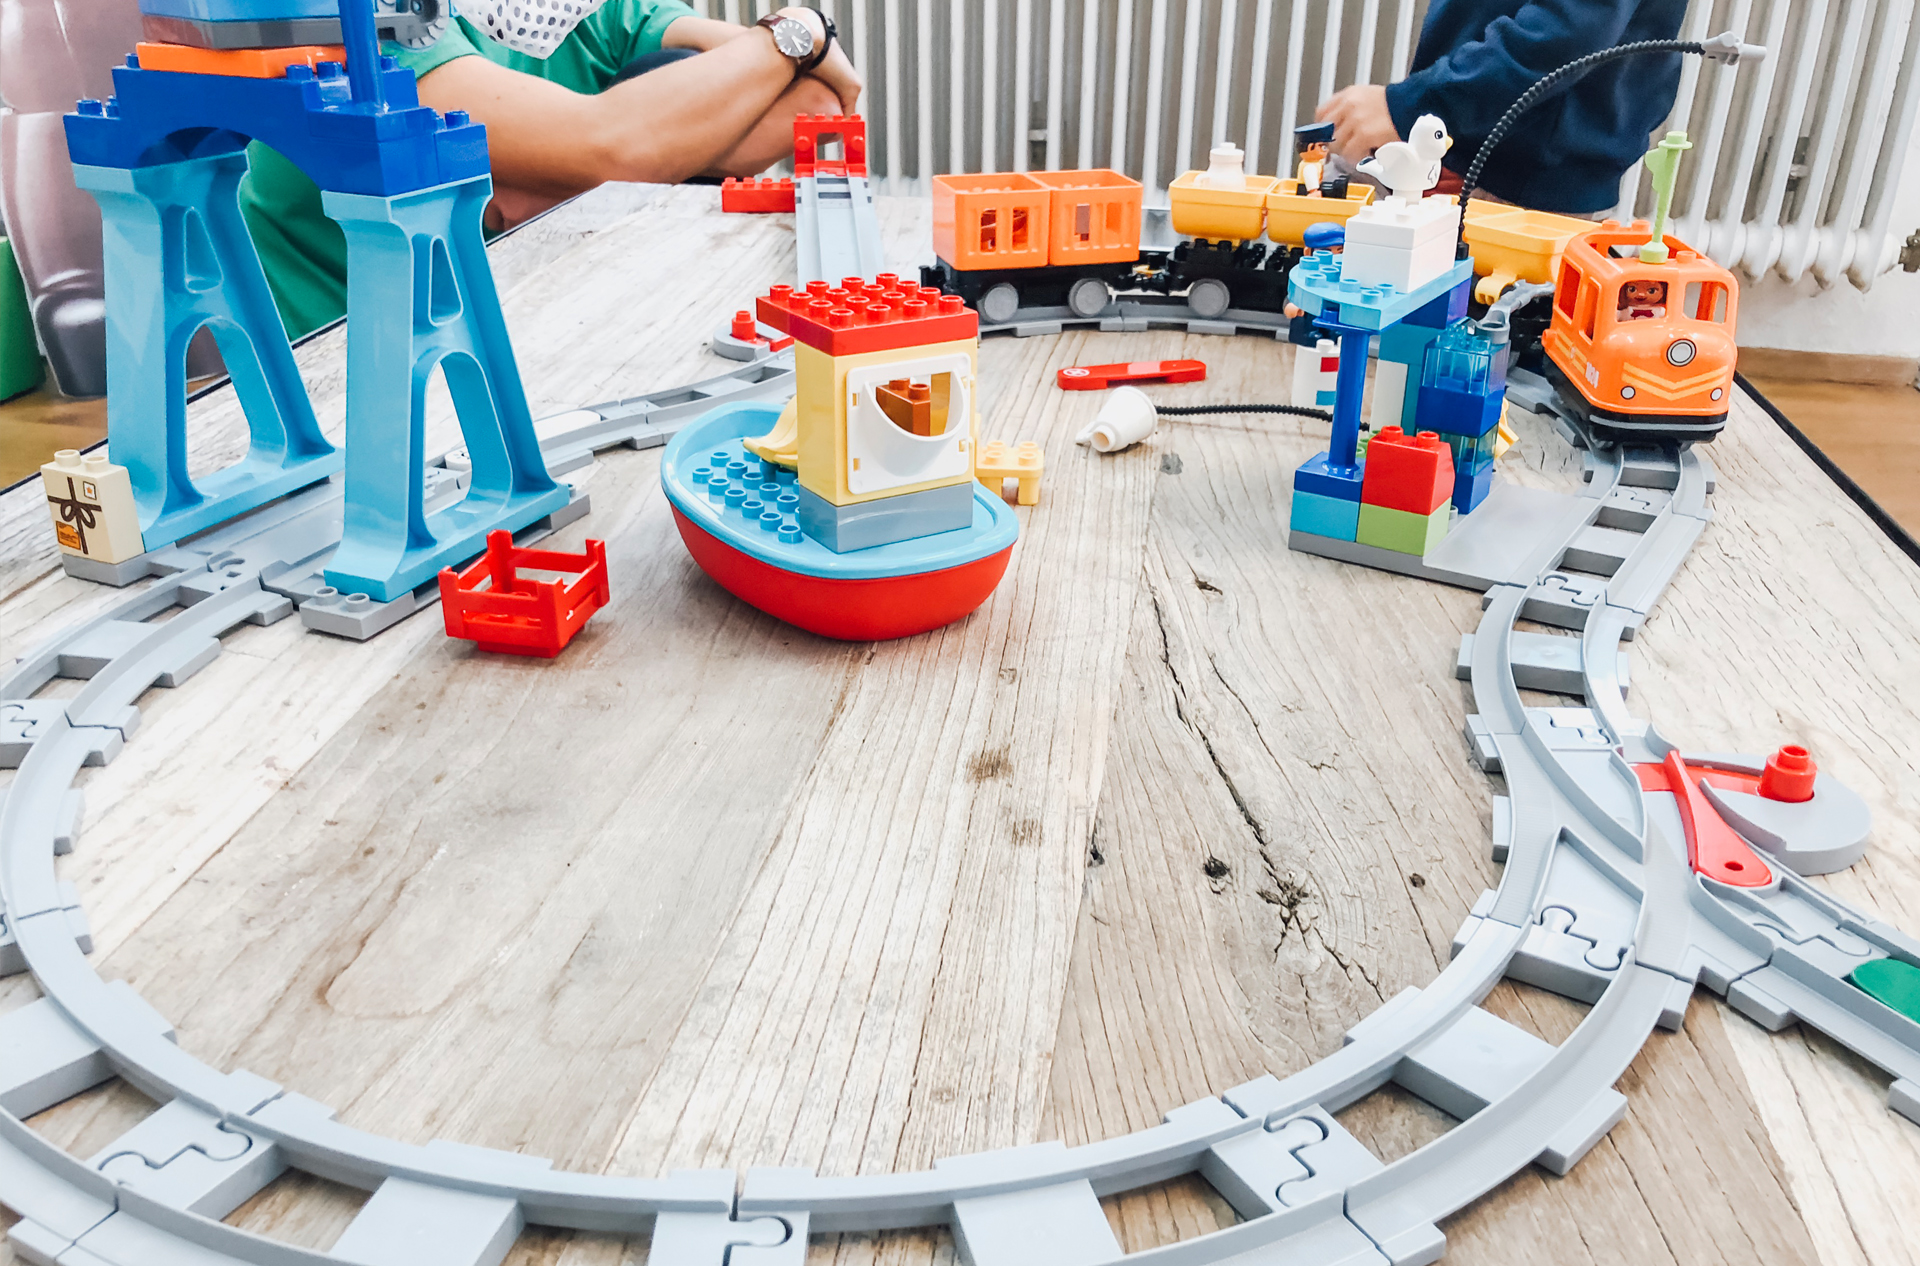 LEGO Duplo Event München 2018 - Neuer Duplo Zug mit App-Steuerung - Weihnachtsgeschenk für Kinder - Jana Nibe Mama Blog 5